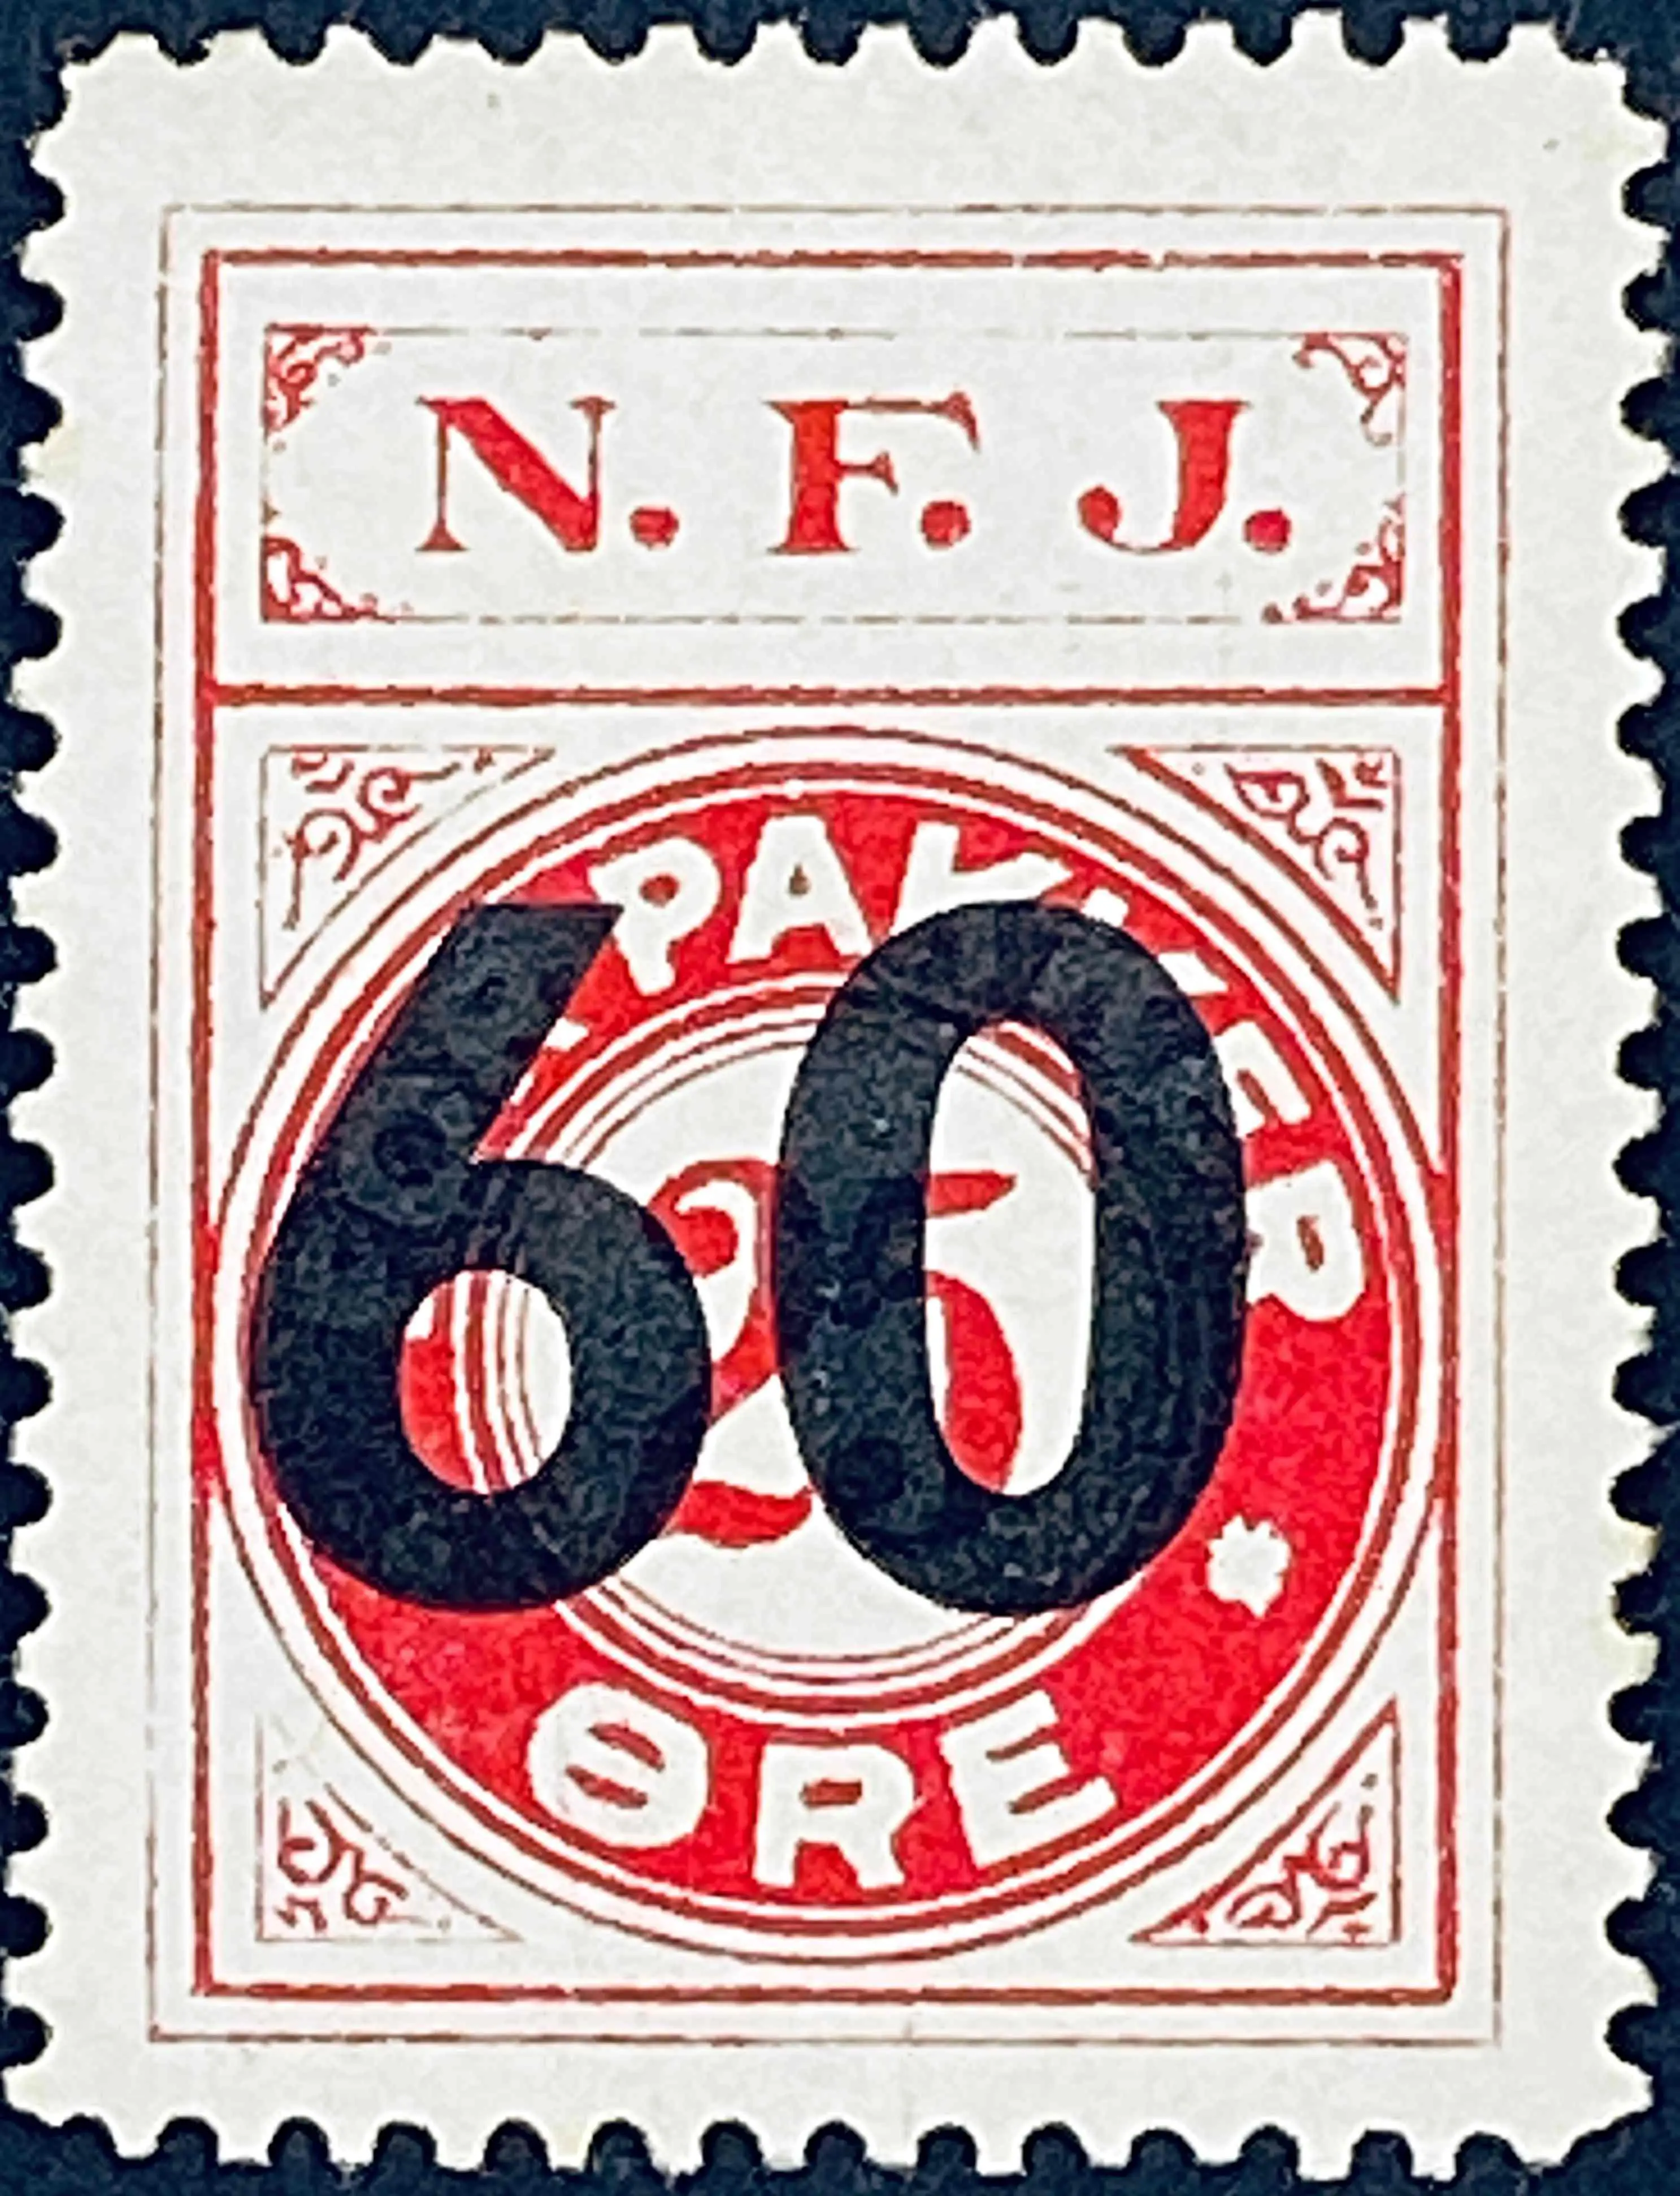 NFJ 33 - Provisorium (overtryk) 600 Øre sort bogtryk på 25 Øre - Karmin.